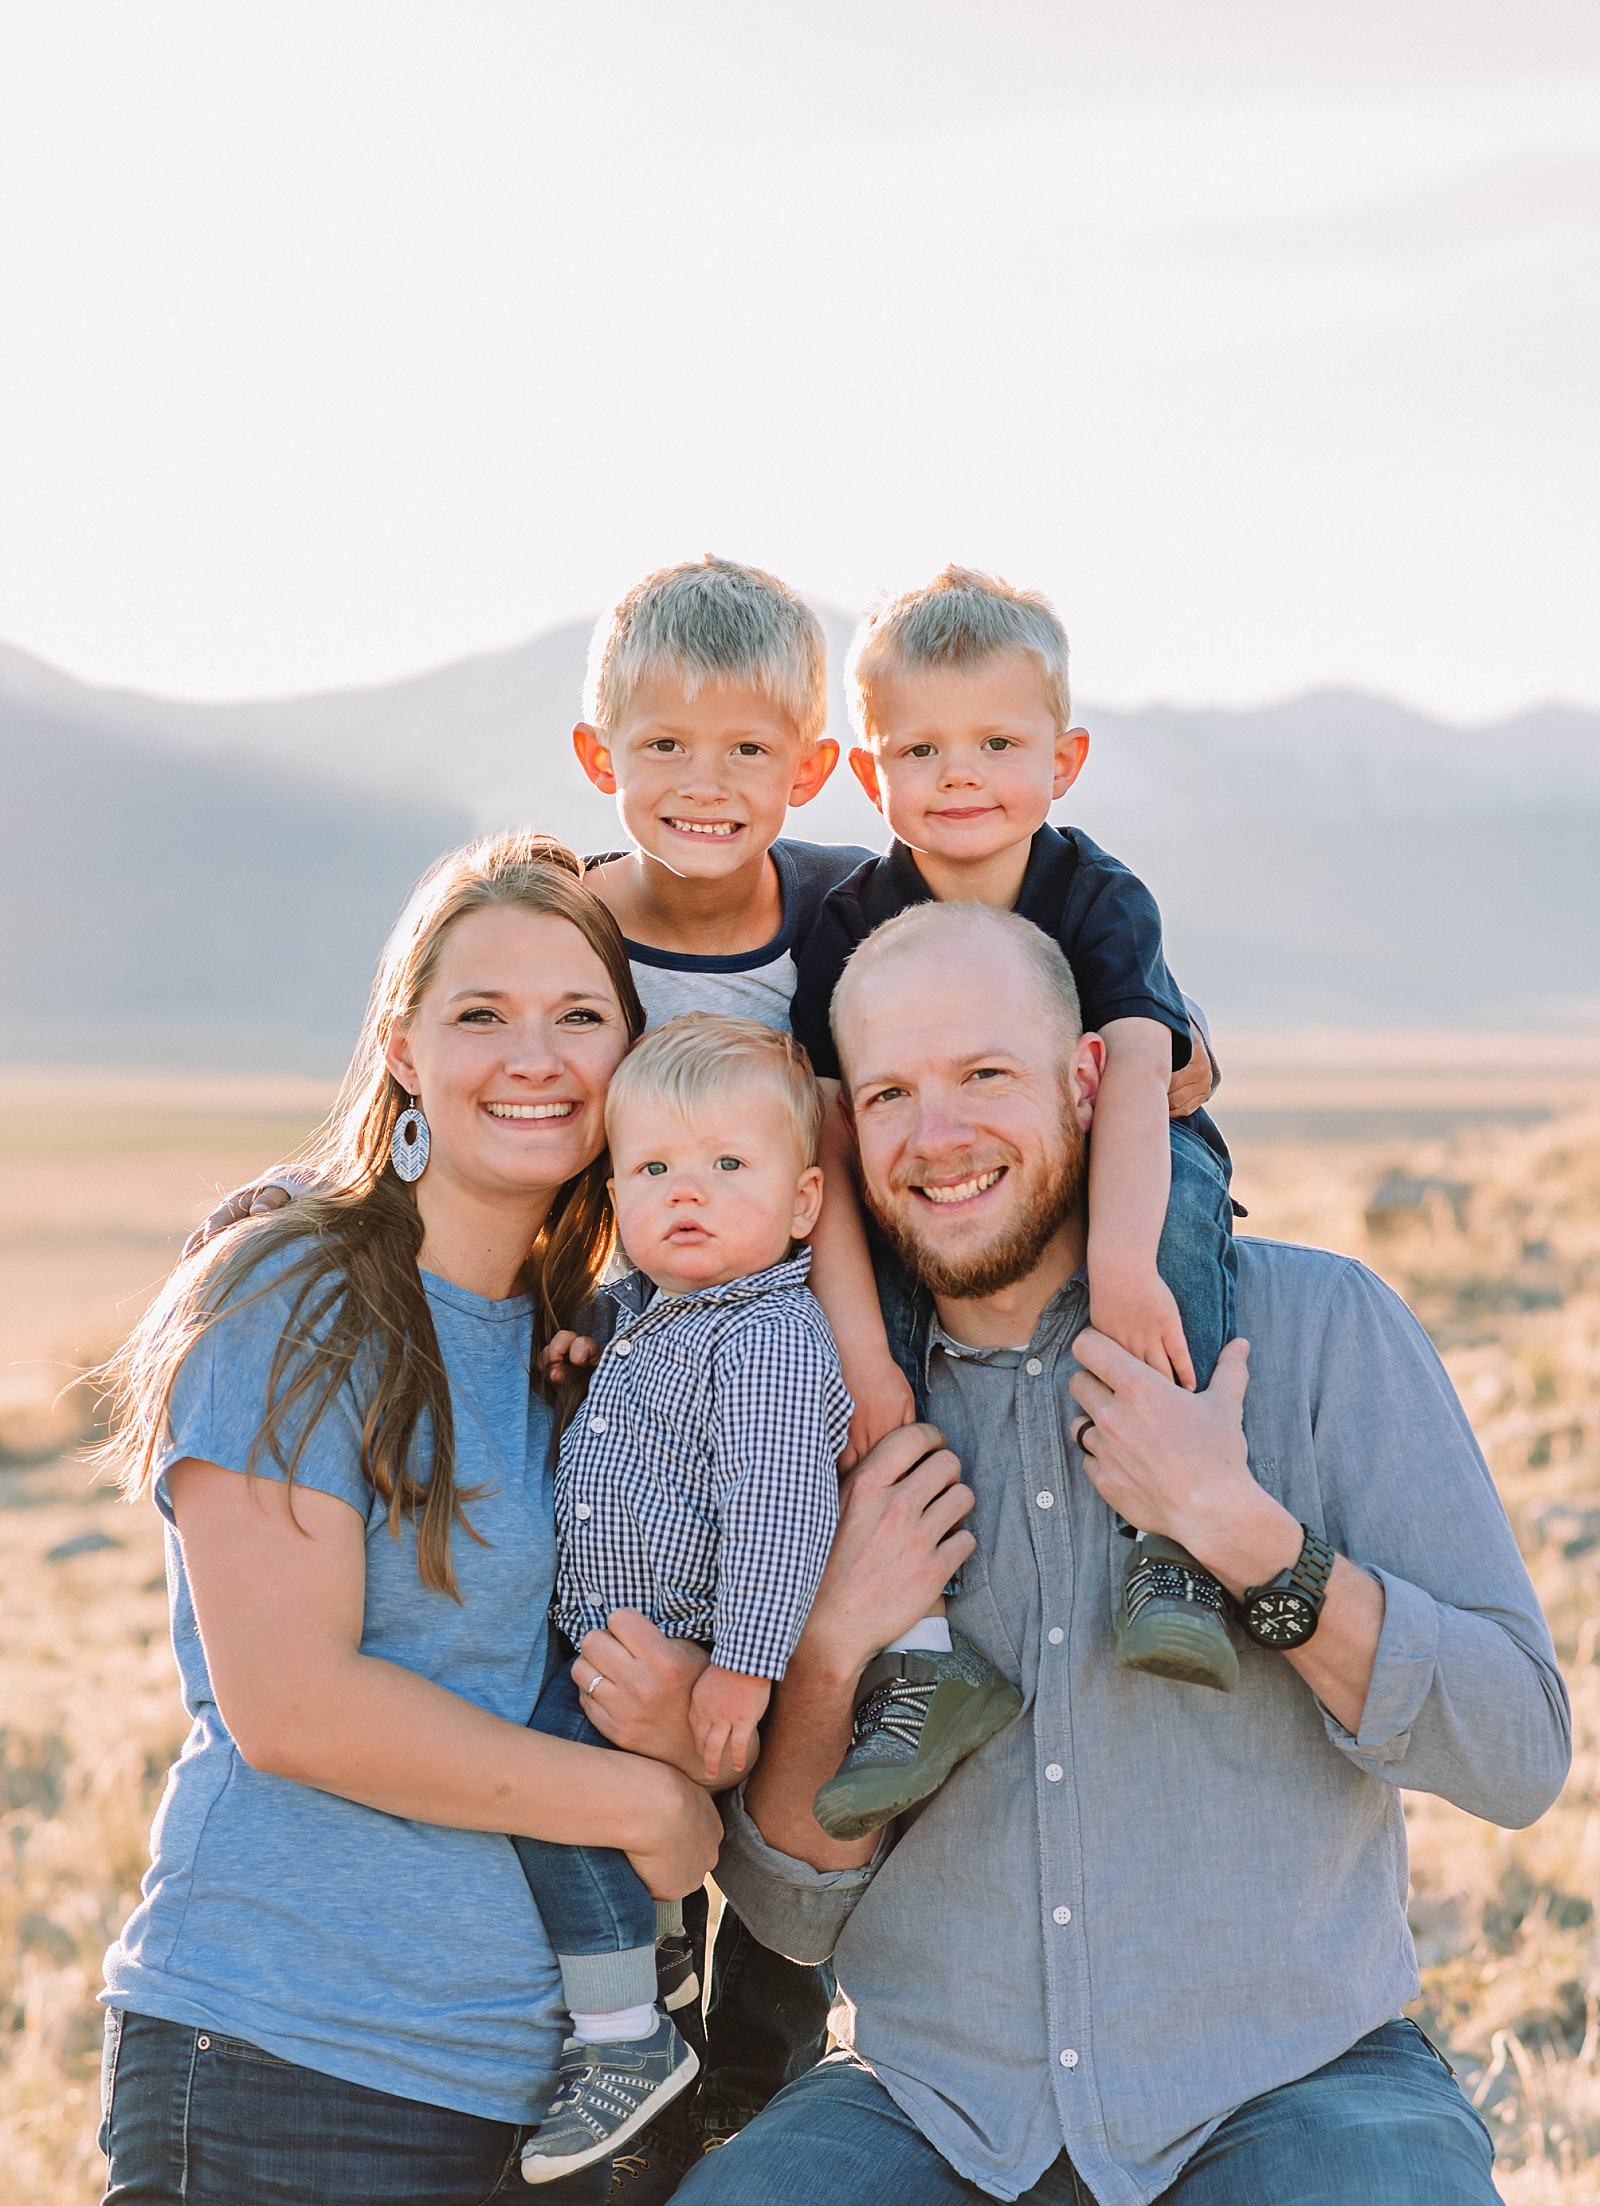 Family Photos at Utah's Pony Express Trailhead